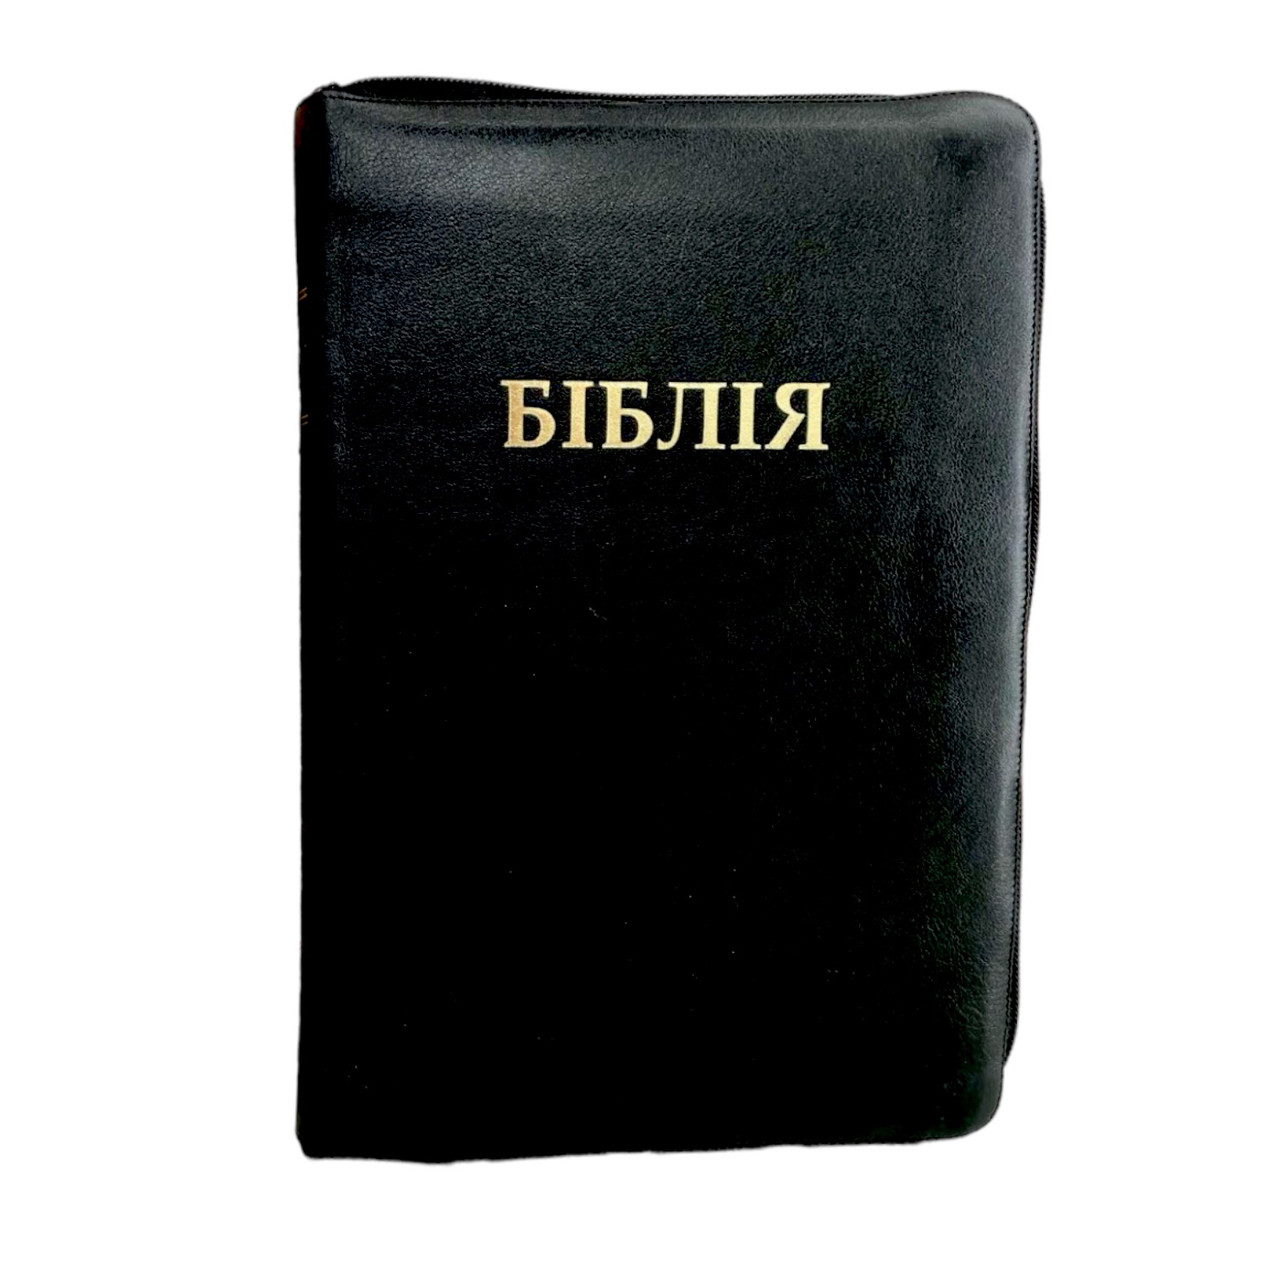 Біблія, переклад Огієнка. Шкіряна палітурка. Ручна робота. Чорного кольору, 17х24 см